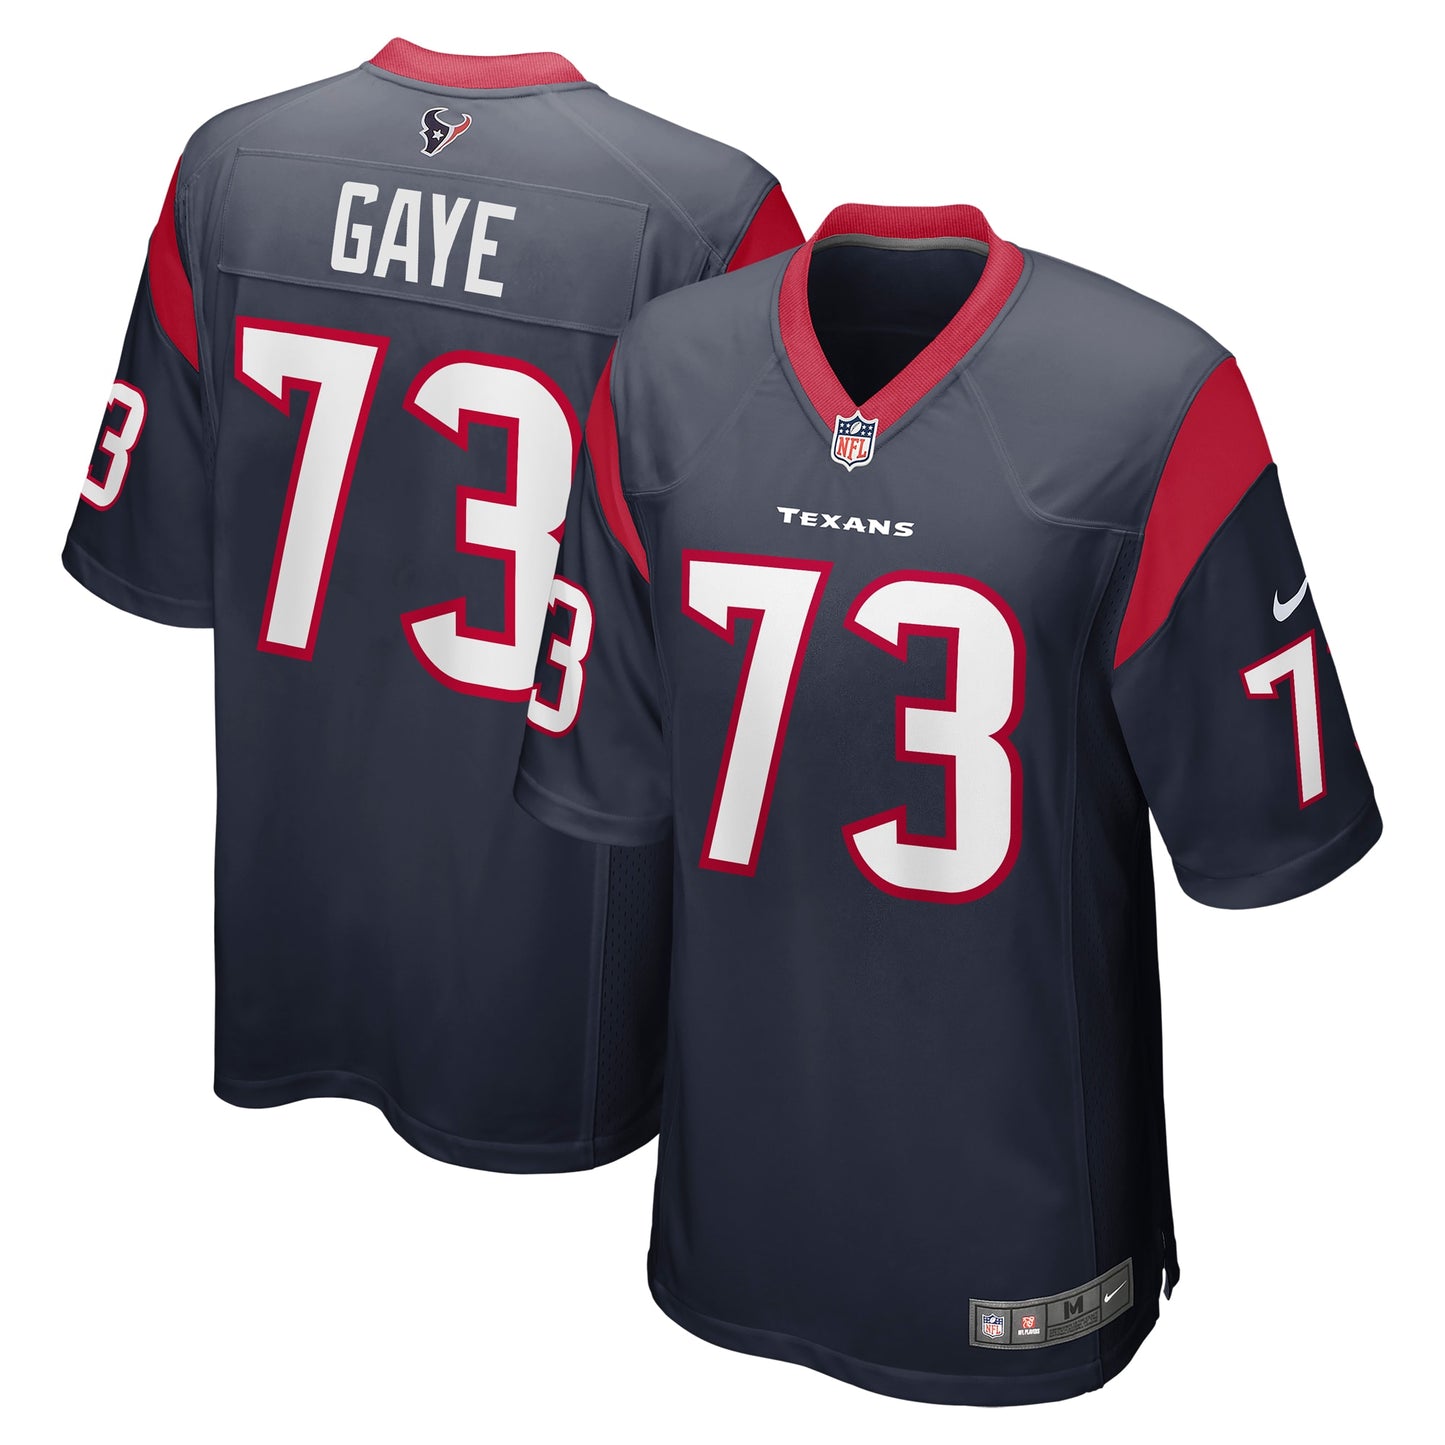 Ali Gaye Houston Texans Nike Team Game Jersey - Navy